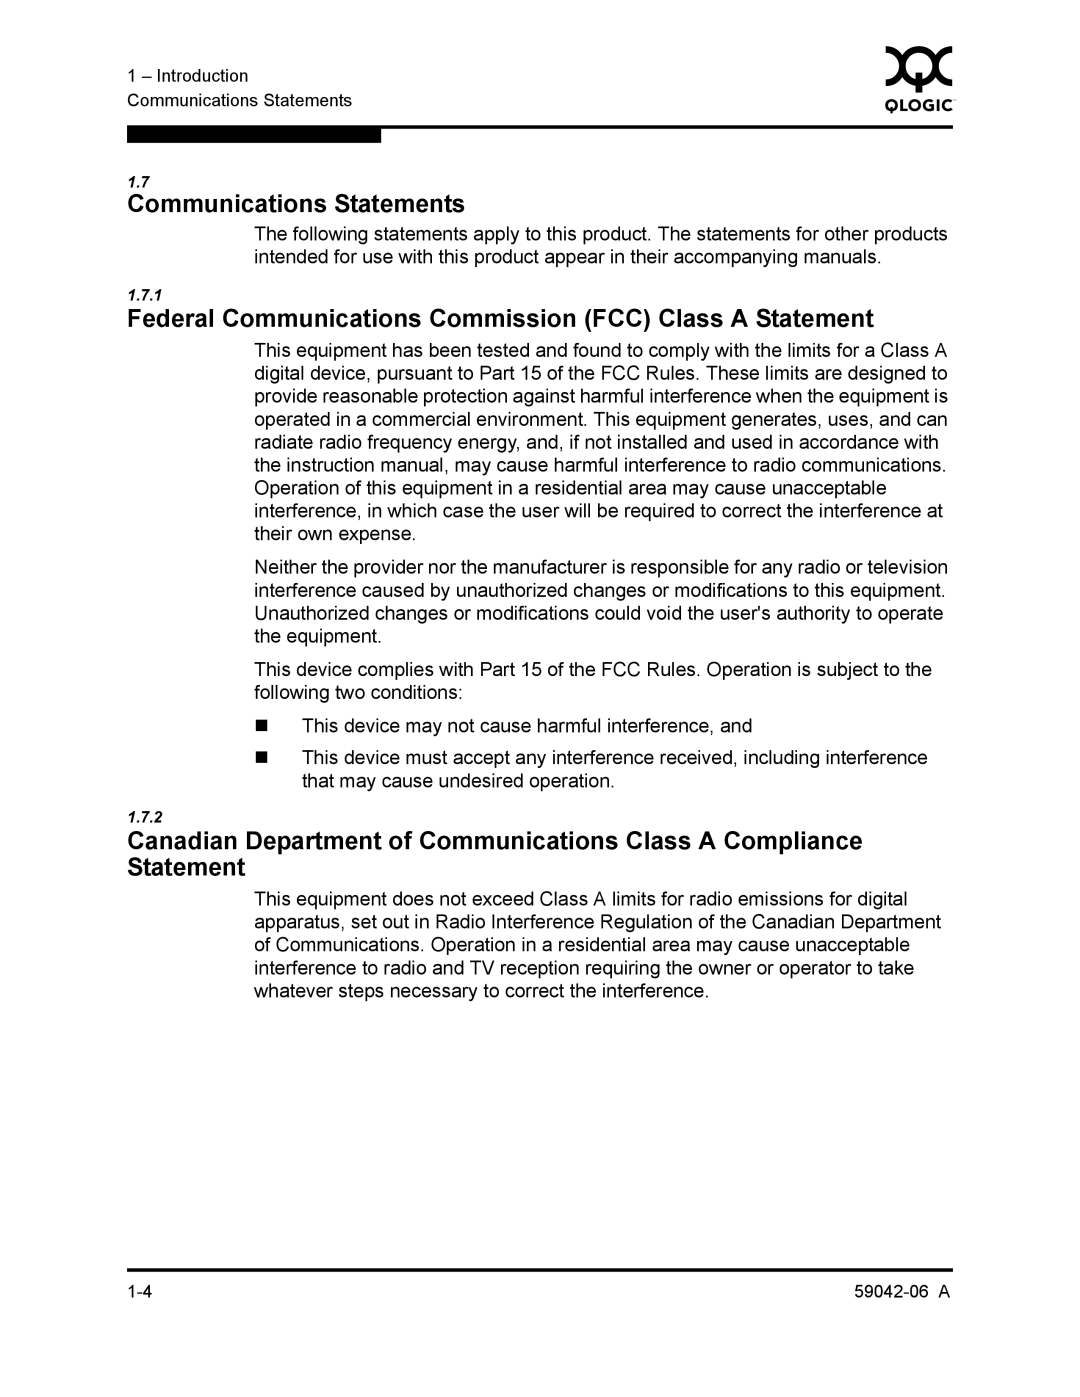 Q-Logic 2-8C manual Communications Statements, Federal Communications Commission FCC Class a Statement 